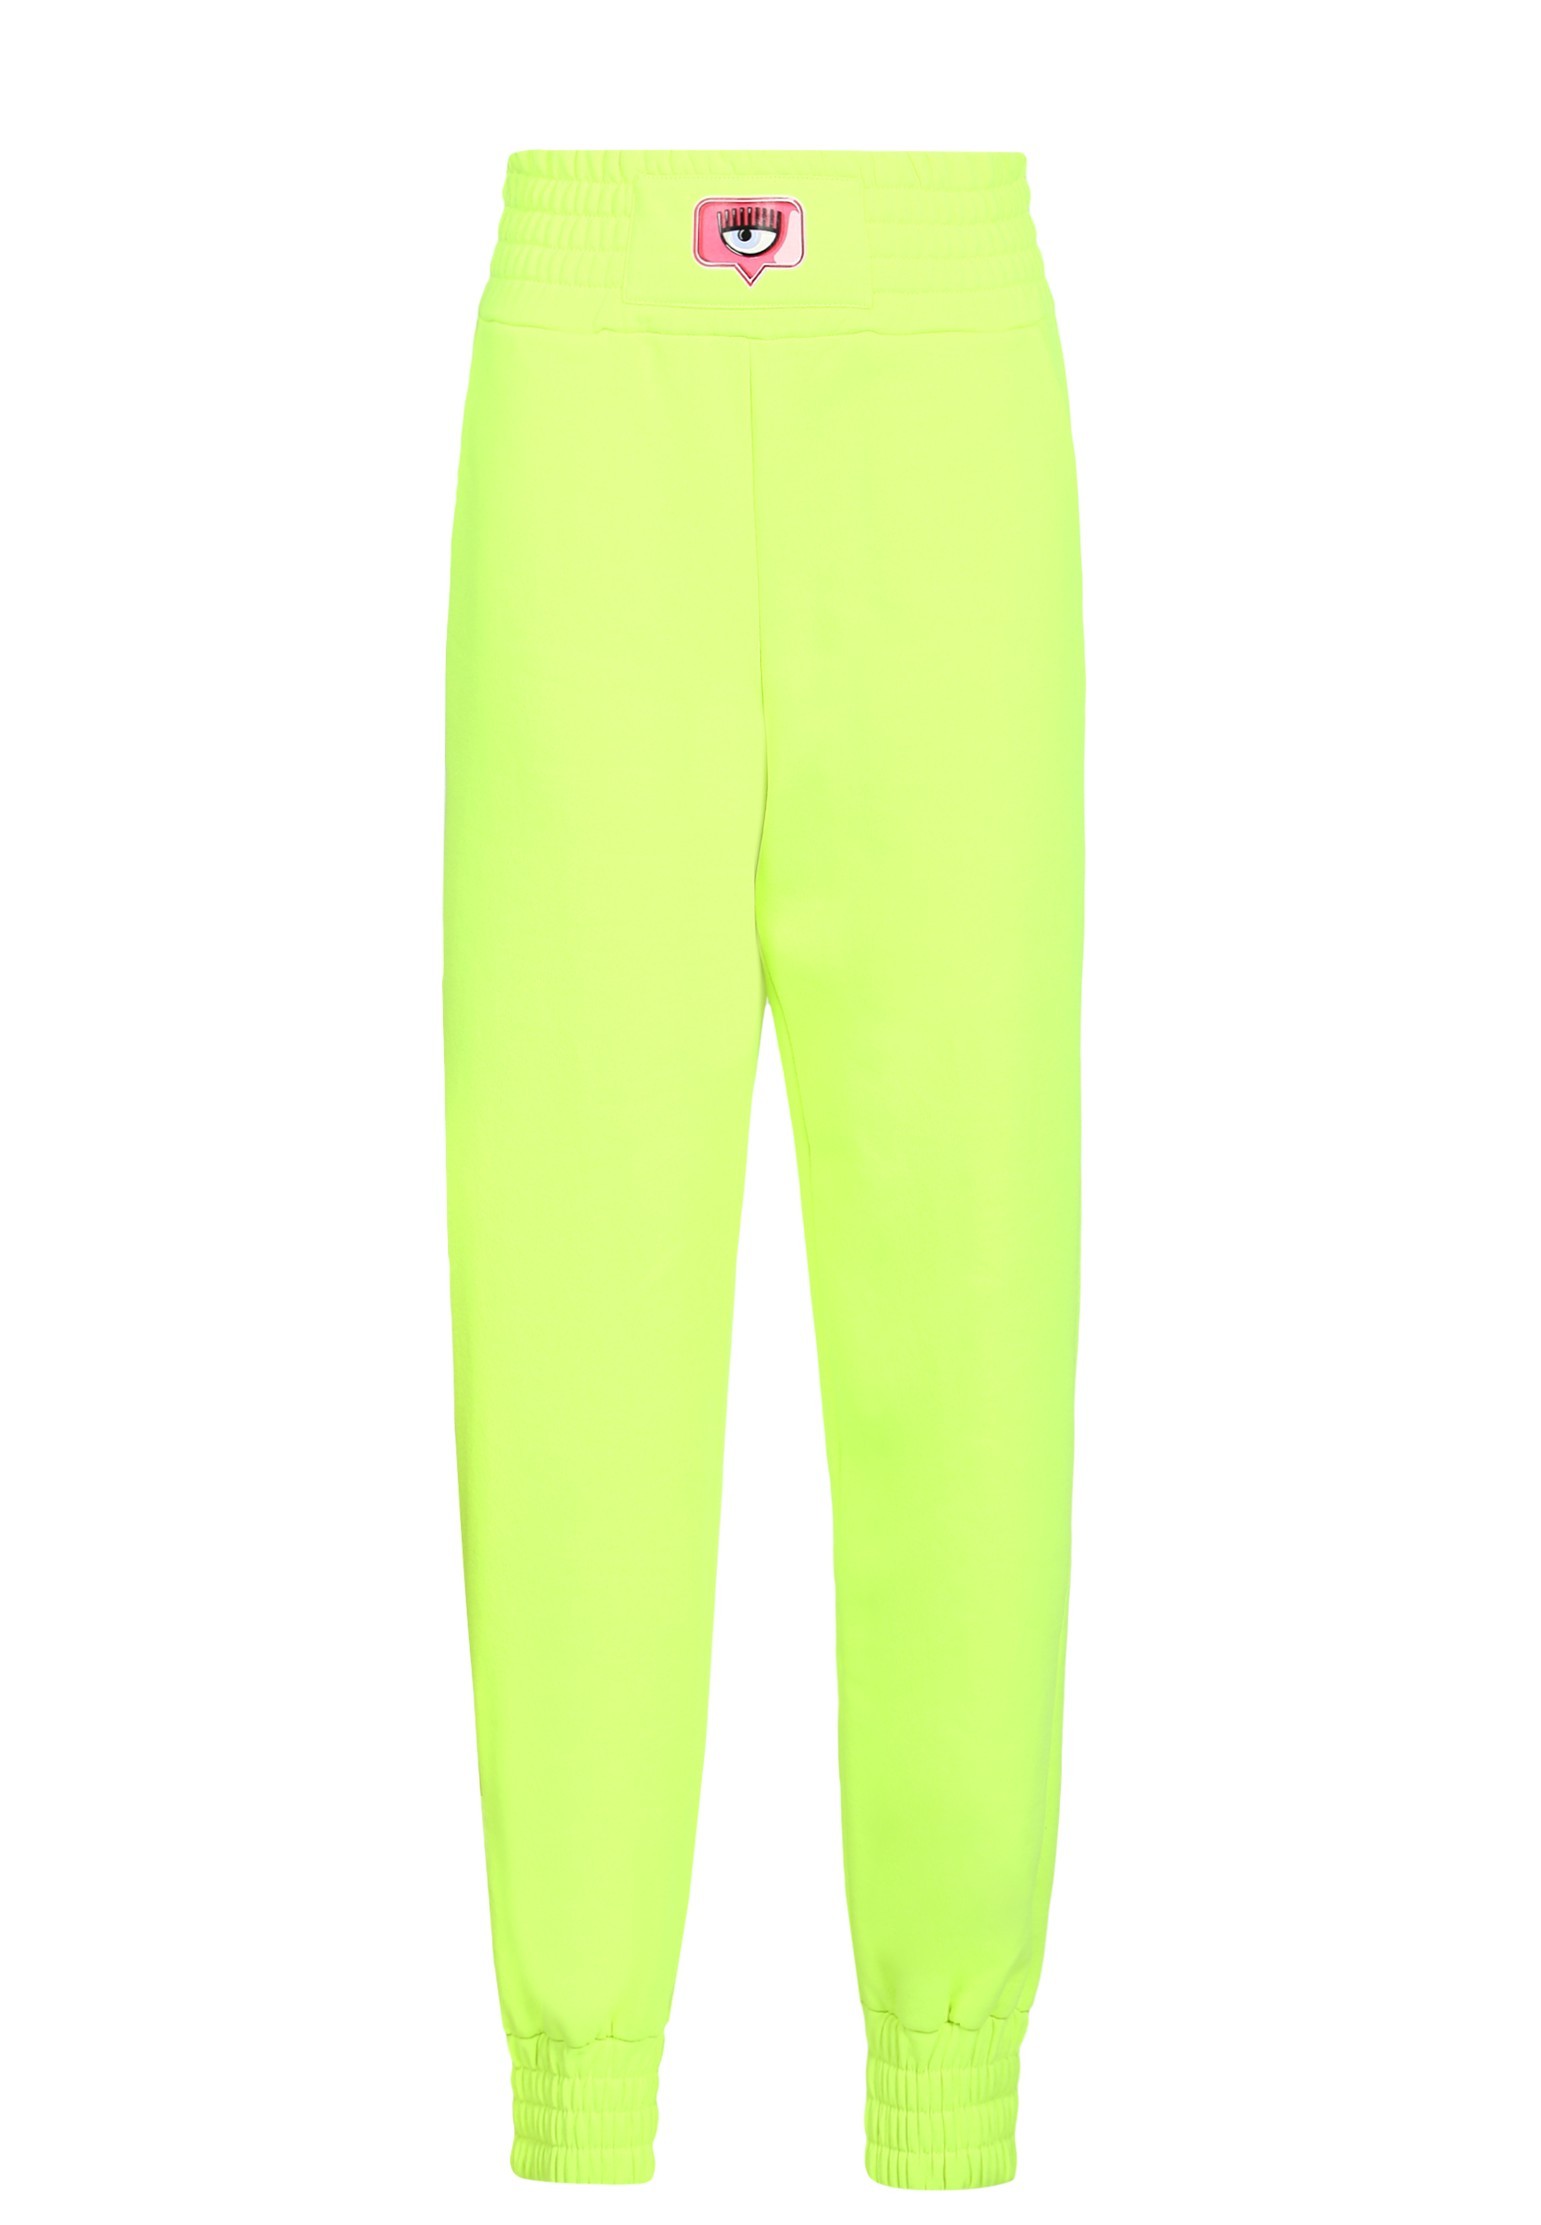 Спортивные брюки женские CHIARA FERRAGNI 138715 зеленые S